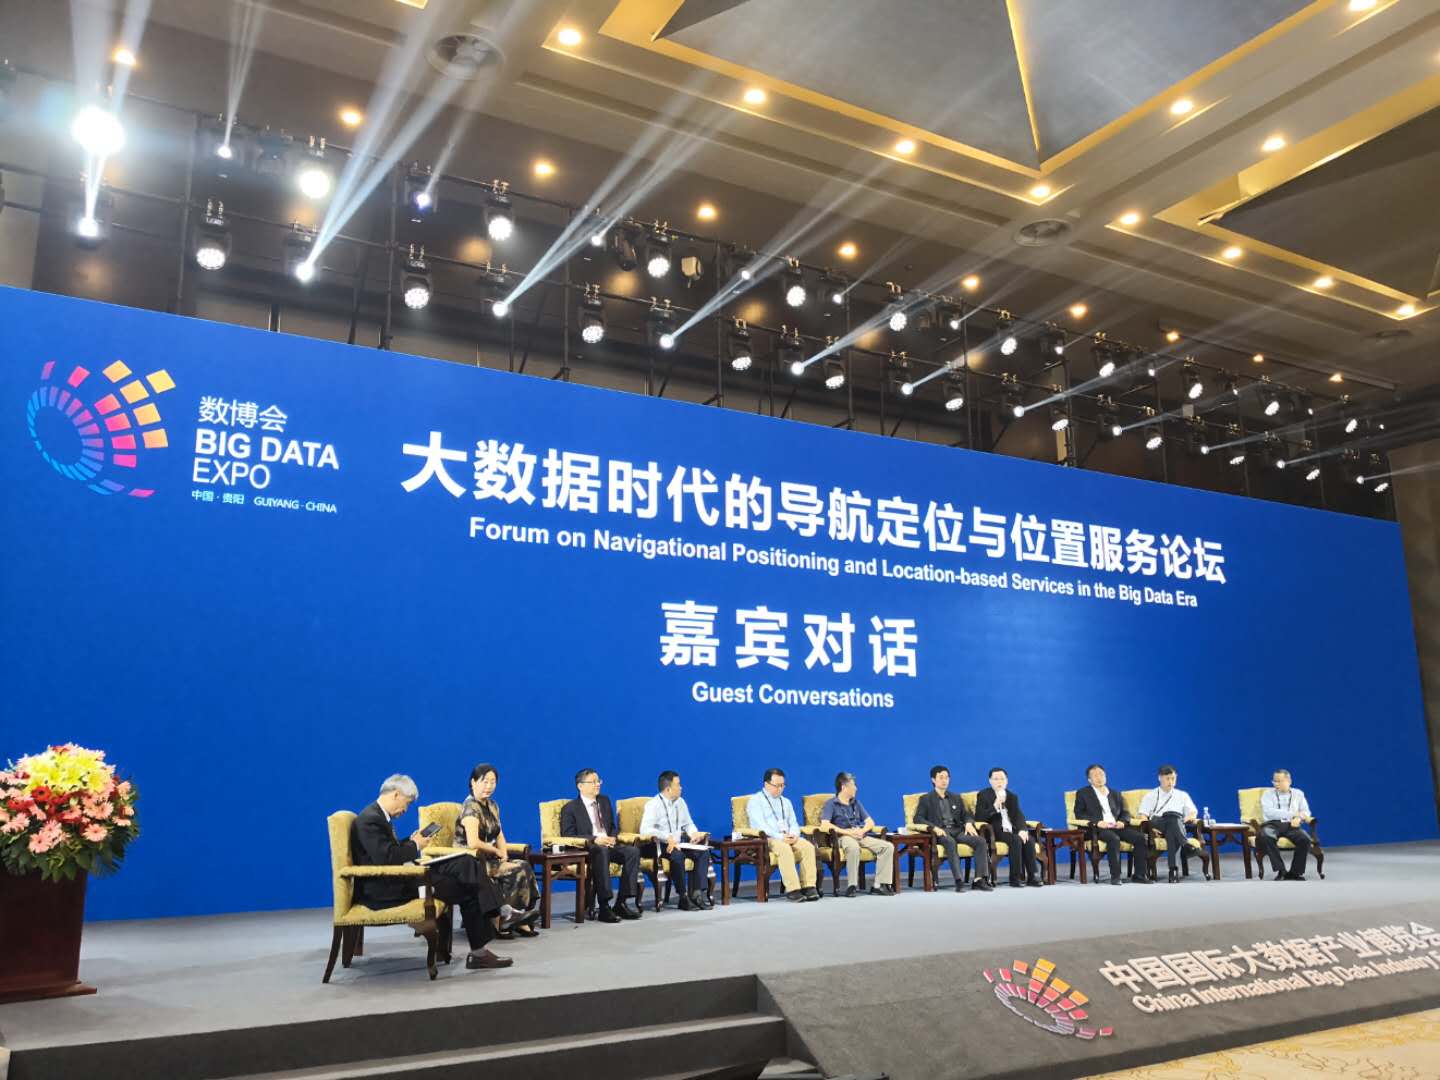 2019中国国际大数据产业博览会· 大数据时代的导航定位与位置服务论坛 隆重召开